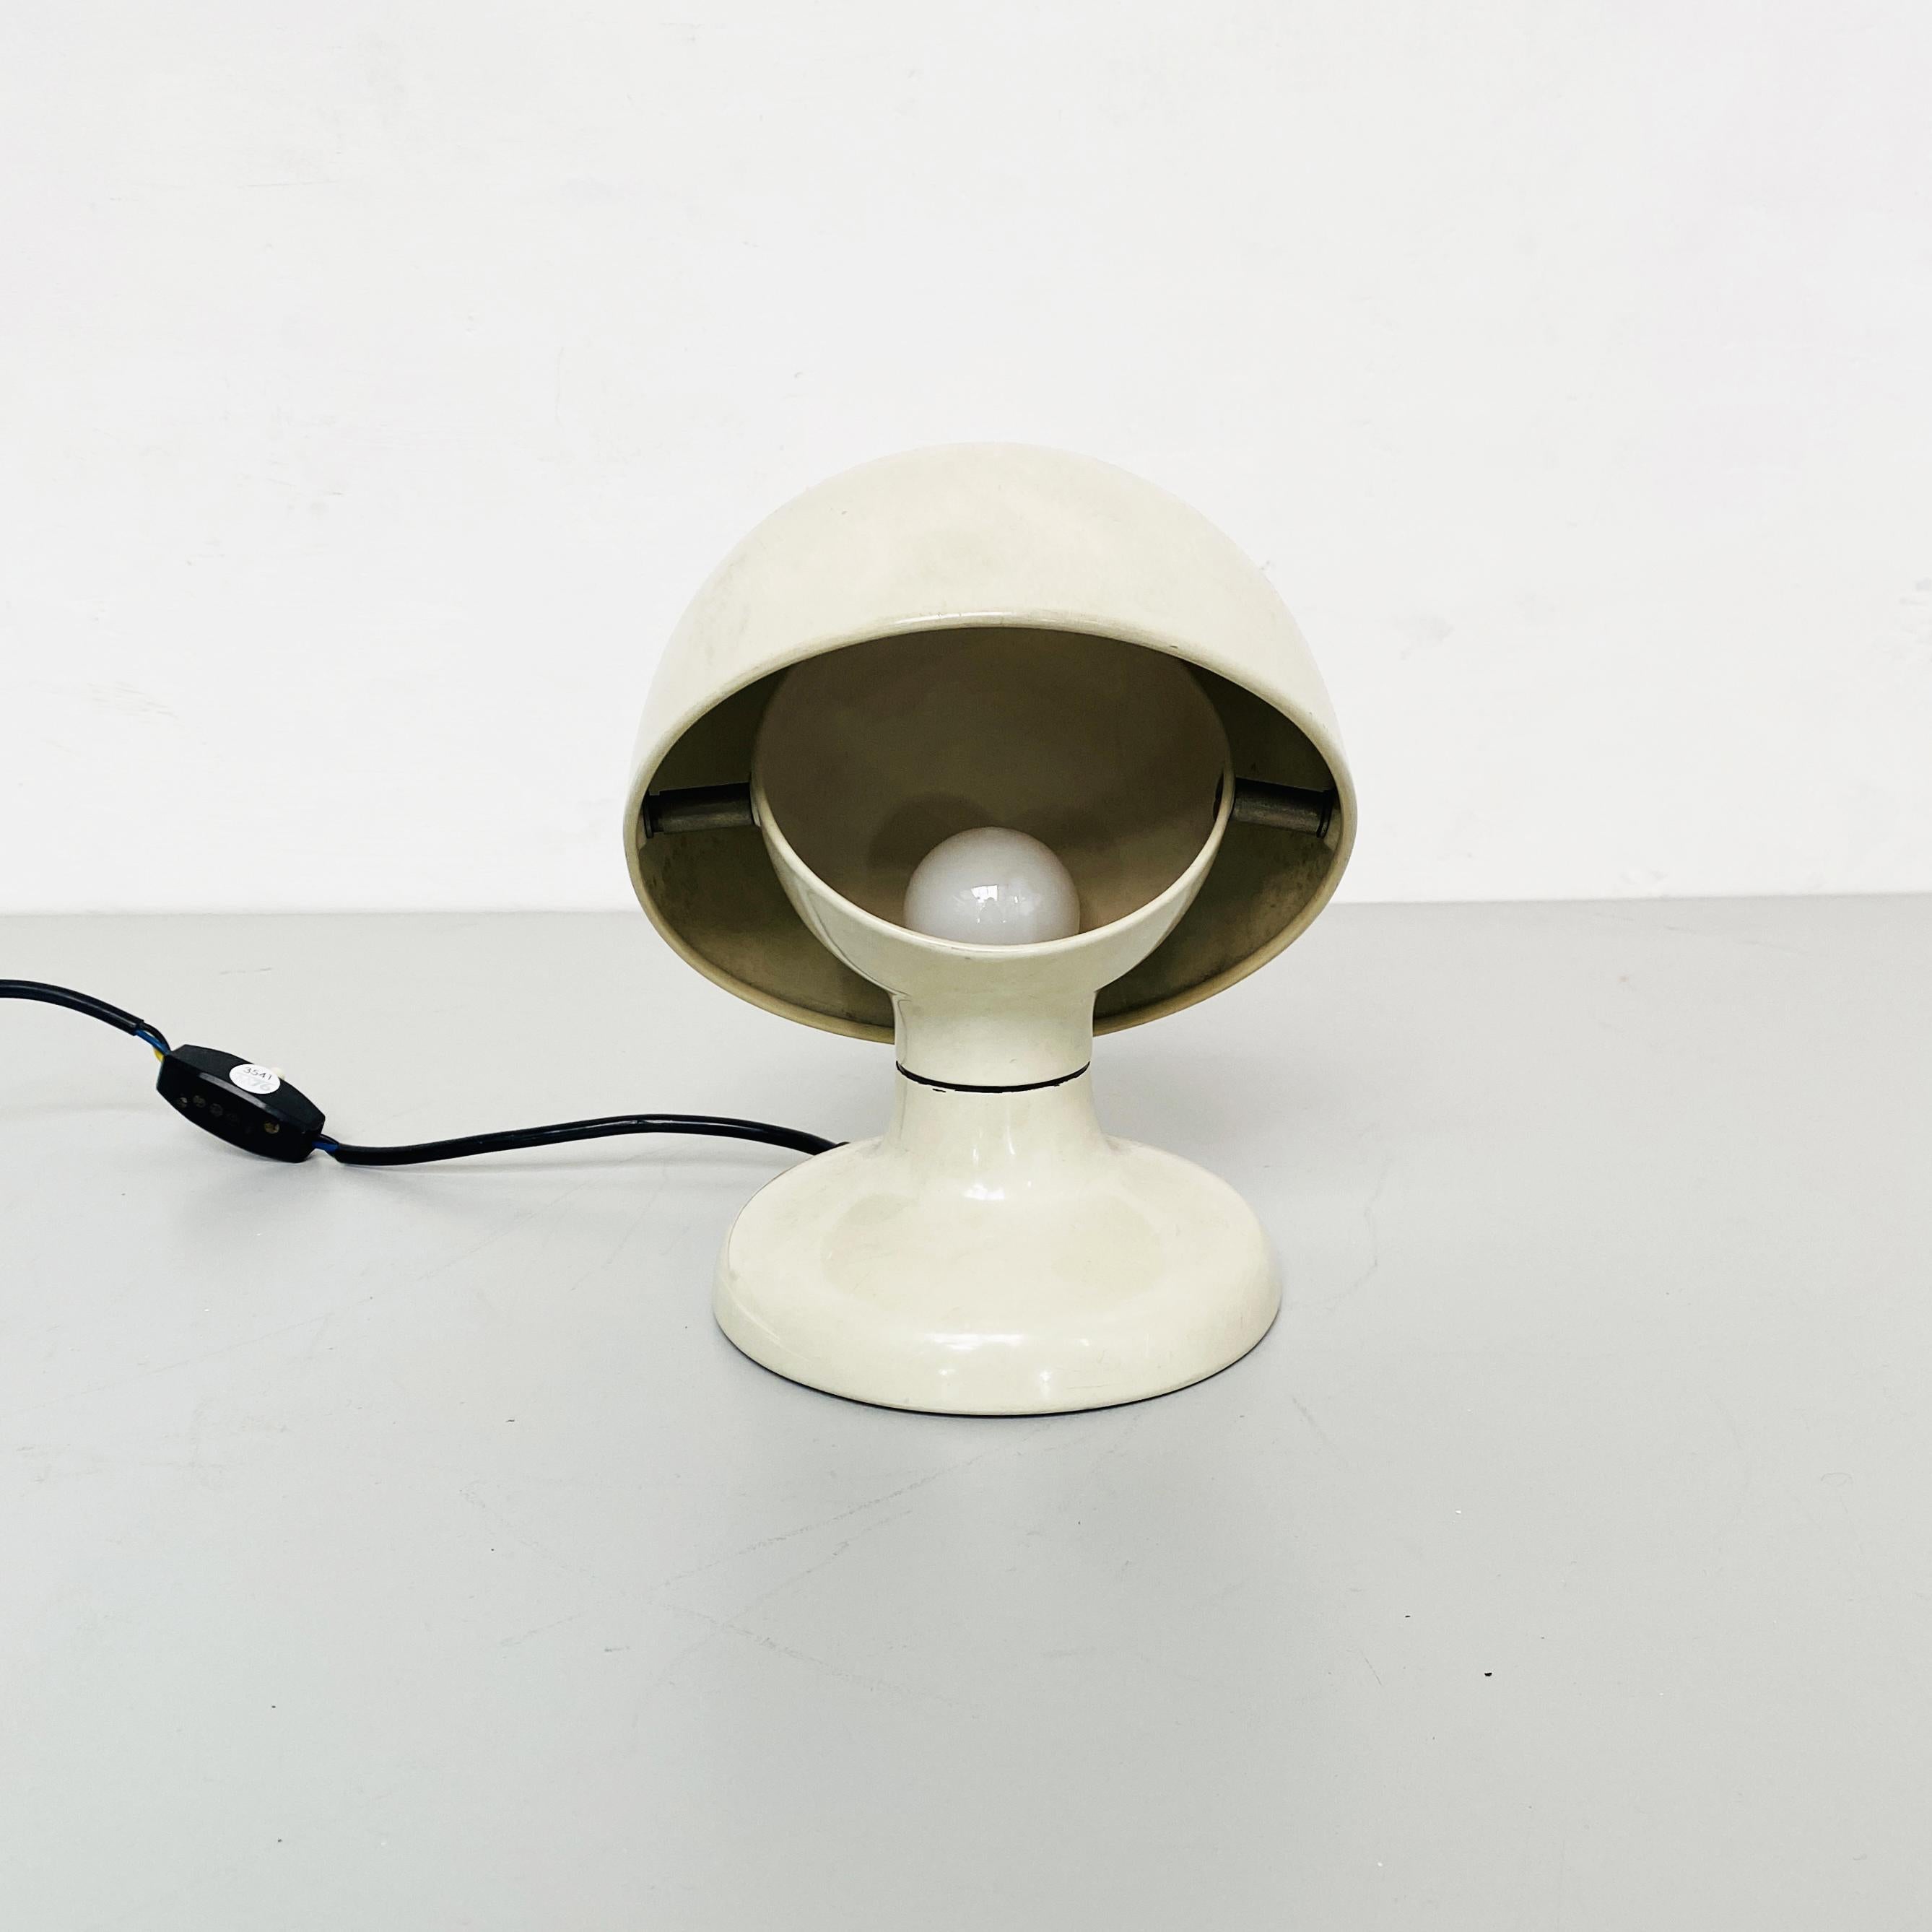 Italienische Jucker-Tischleuchte aus weißem Metall, Mitte des Jahrhunderts, von Tobia Scarpa für Flos, 1963
Jucker verstellbare Tischlampen aus weißem Metall. 

Produziert von Flos im Jahr 1963 nach einem Projekt von Tobia Scarpa.
Tobia Scarpa ist